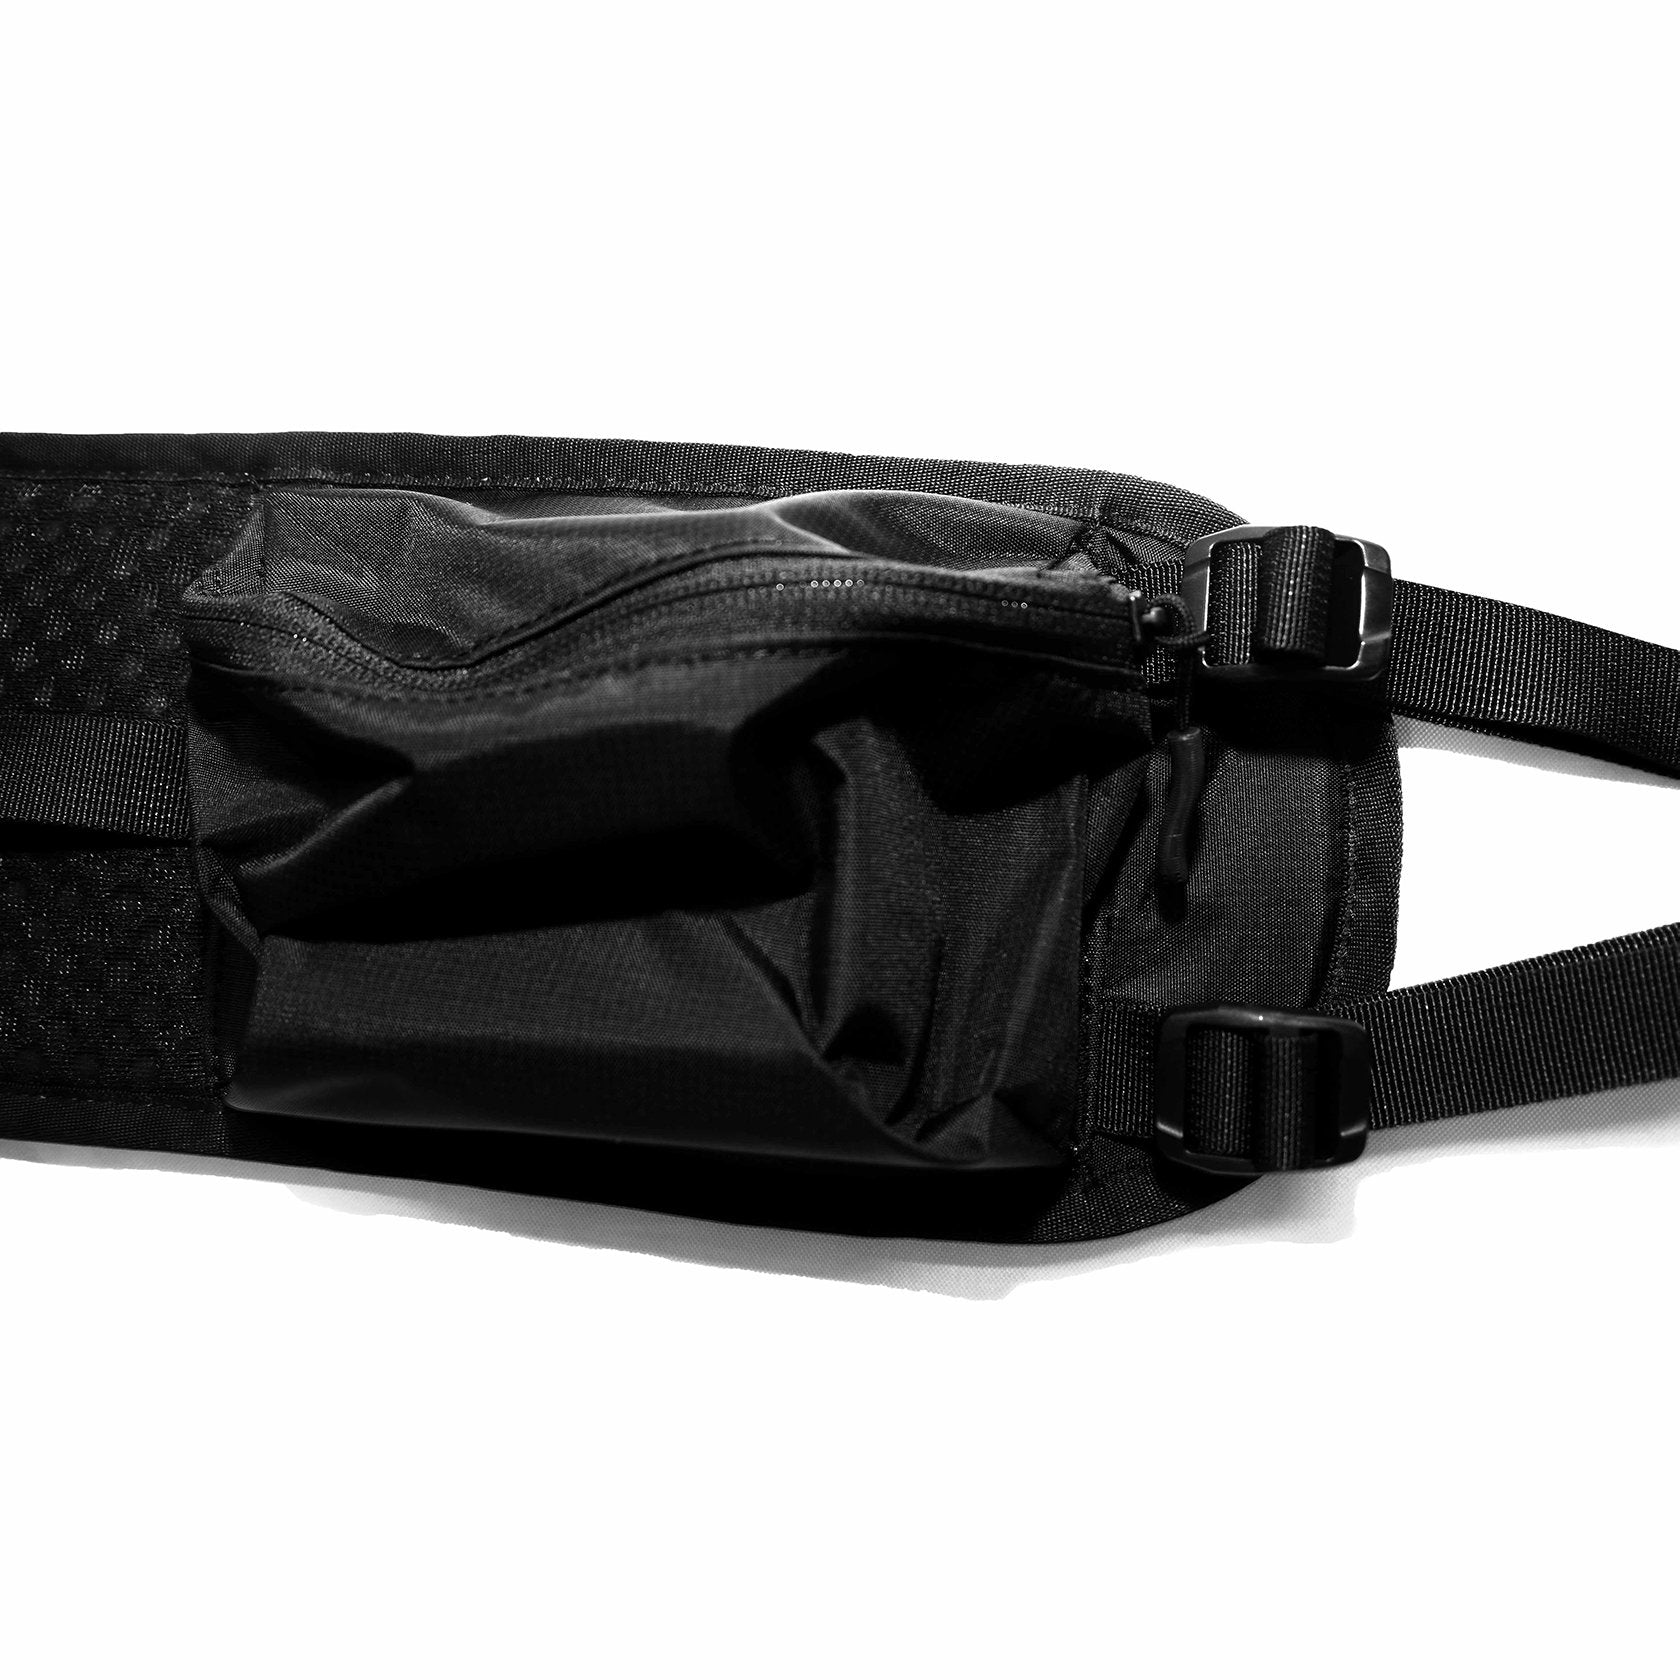 Black Leather 2 pocket Hip Belt